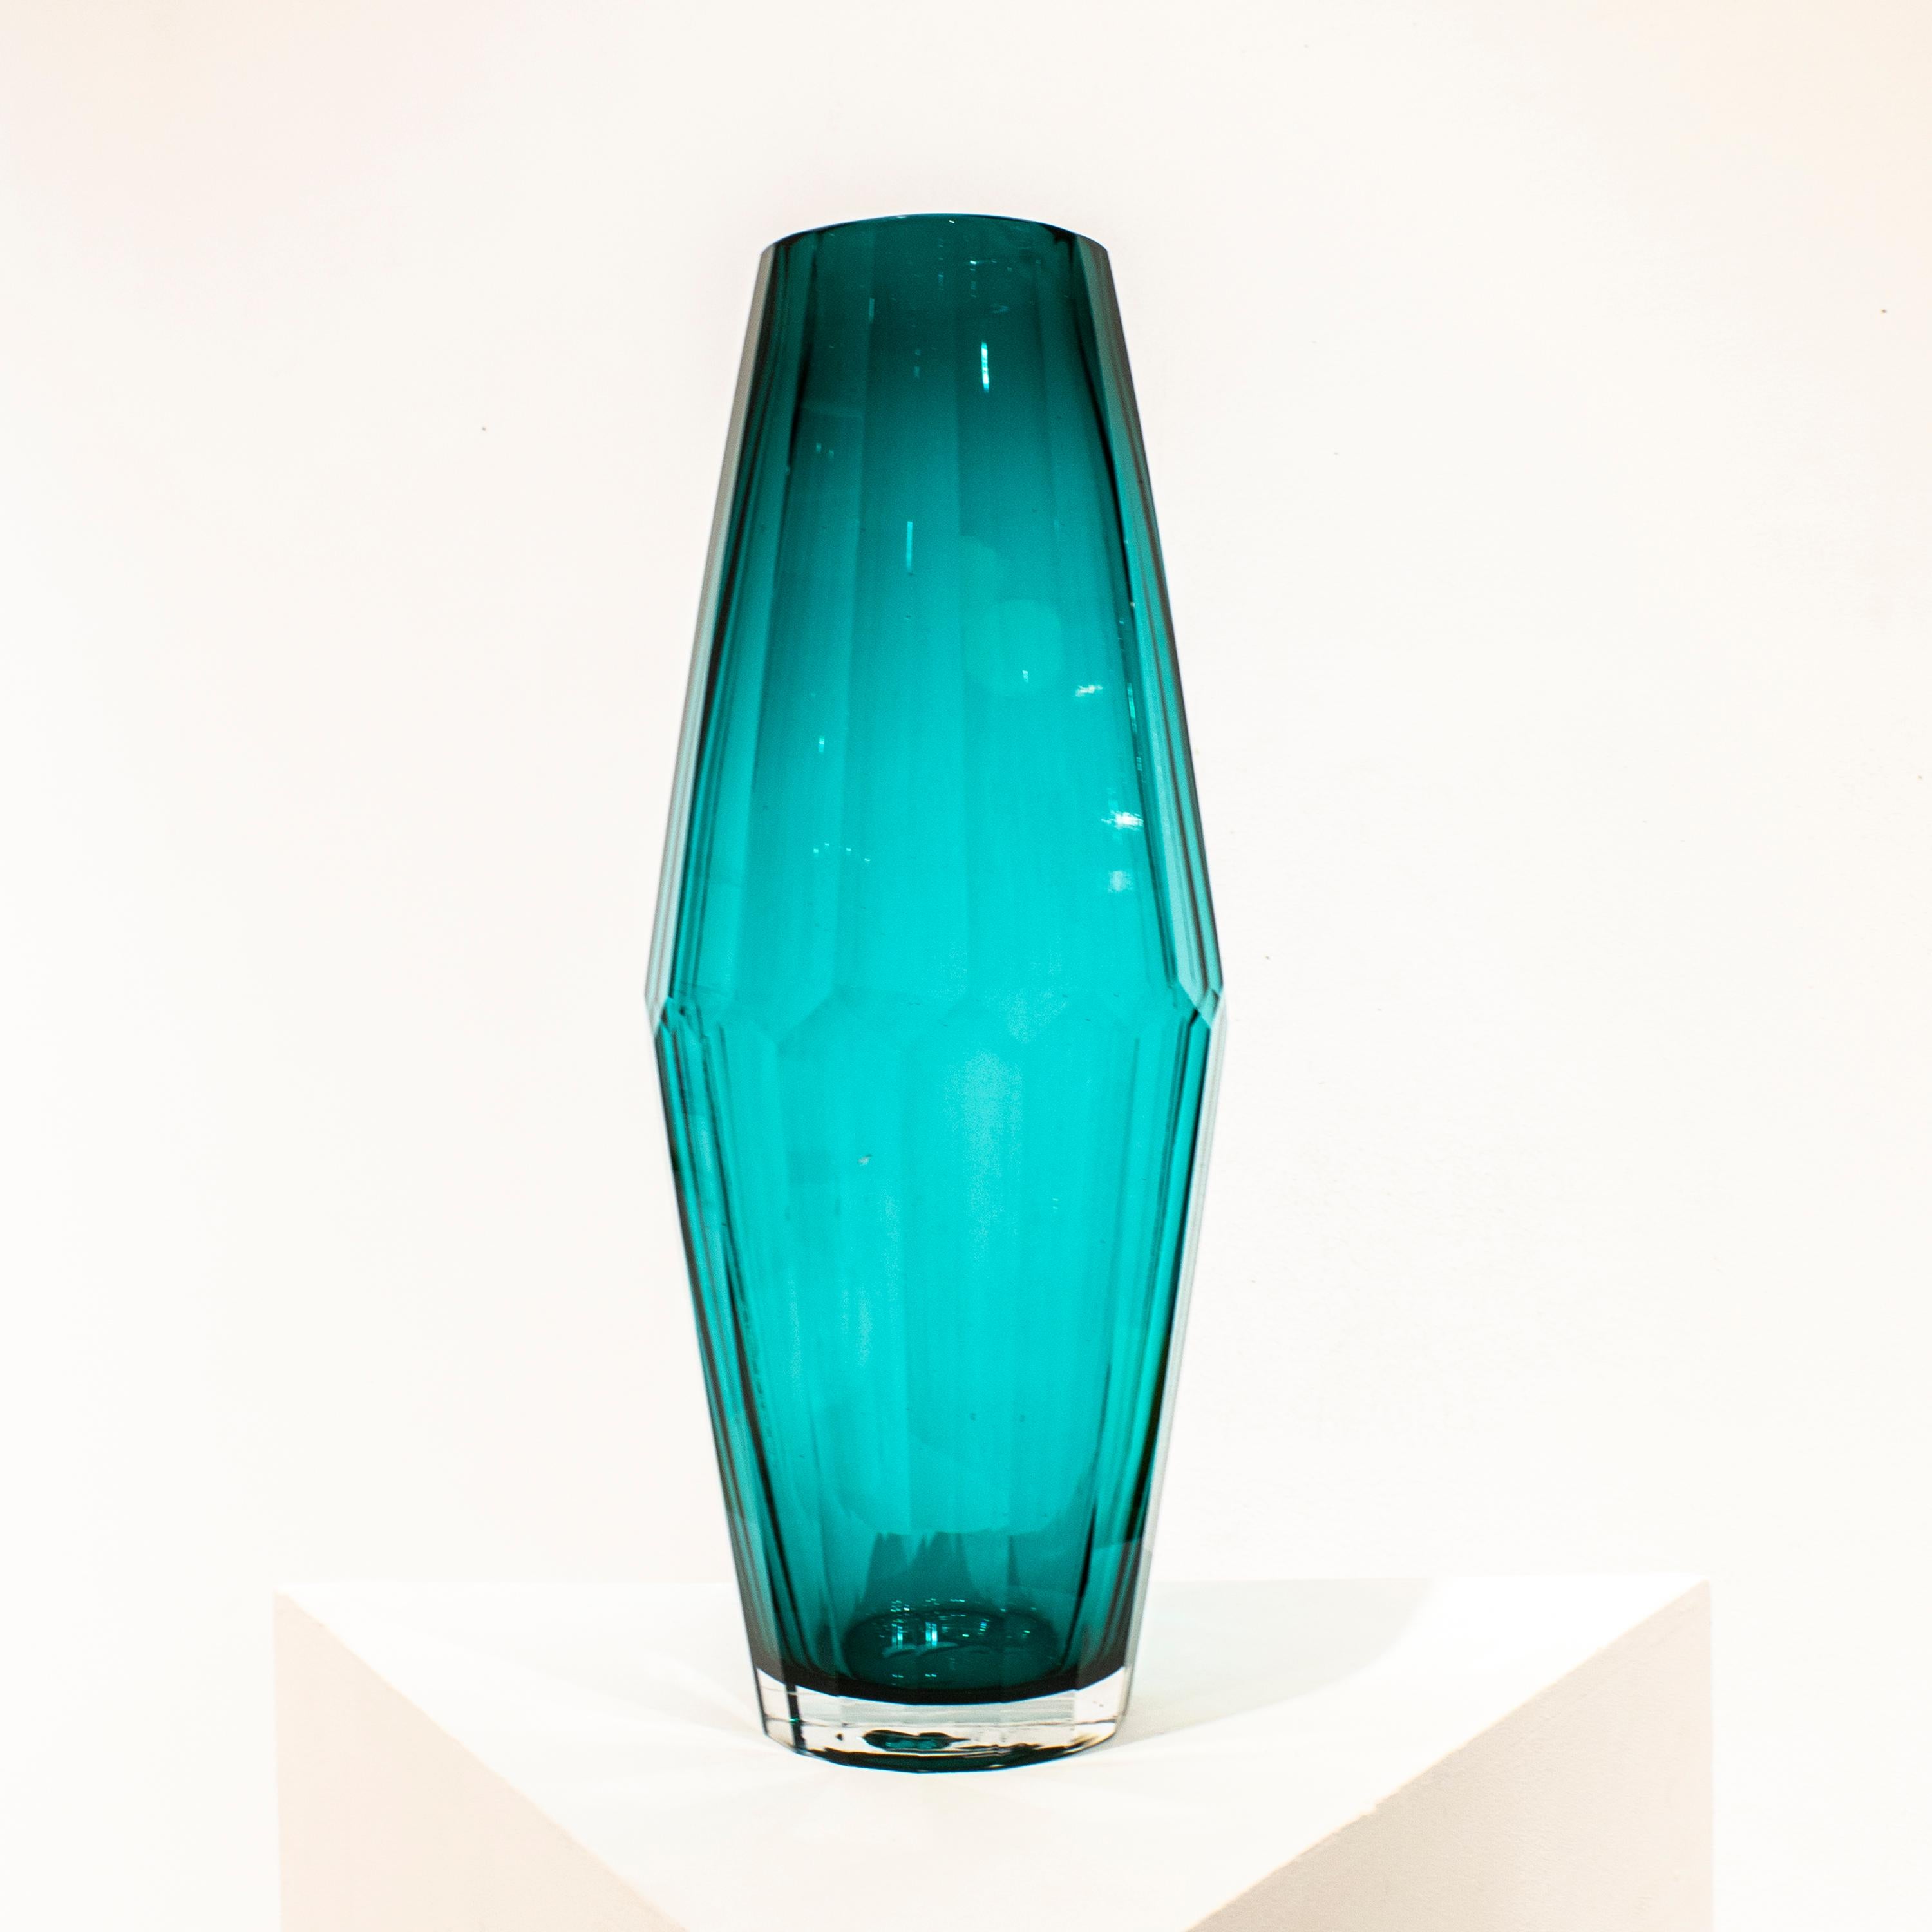 Vase en verre semi-transparent bleu italien soufflé à la main, de forme facettée.